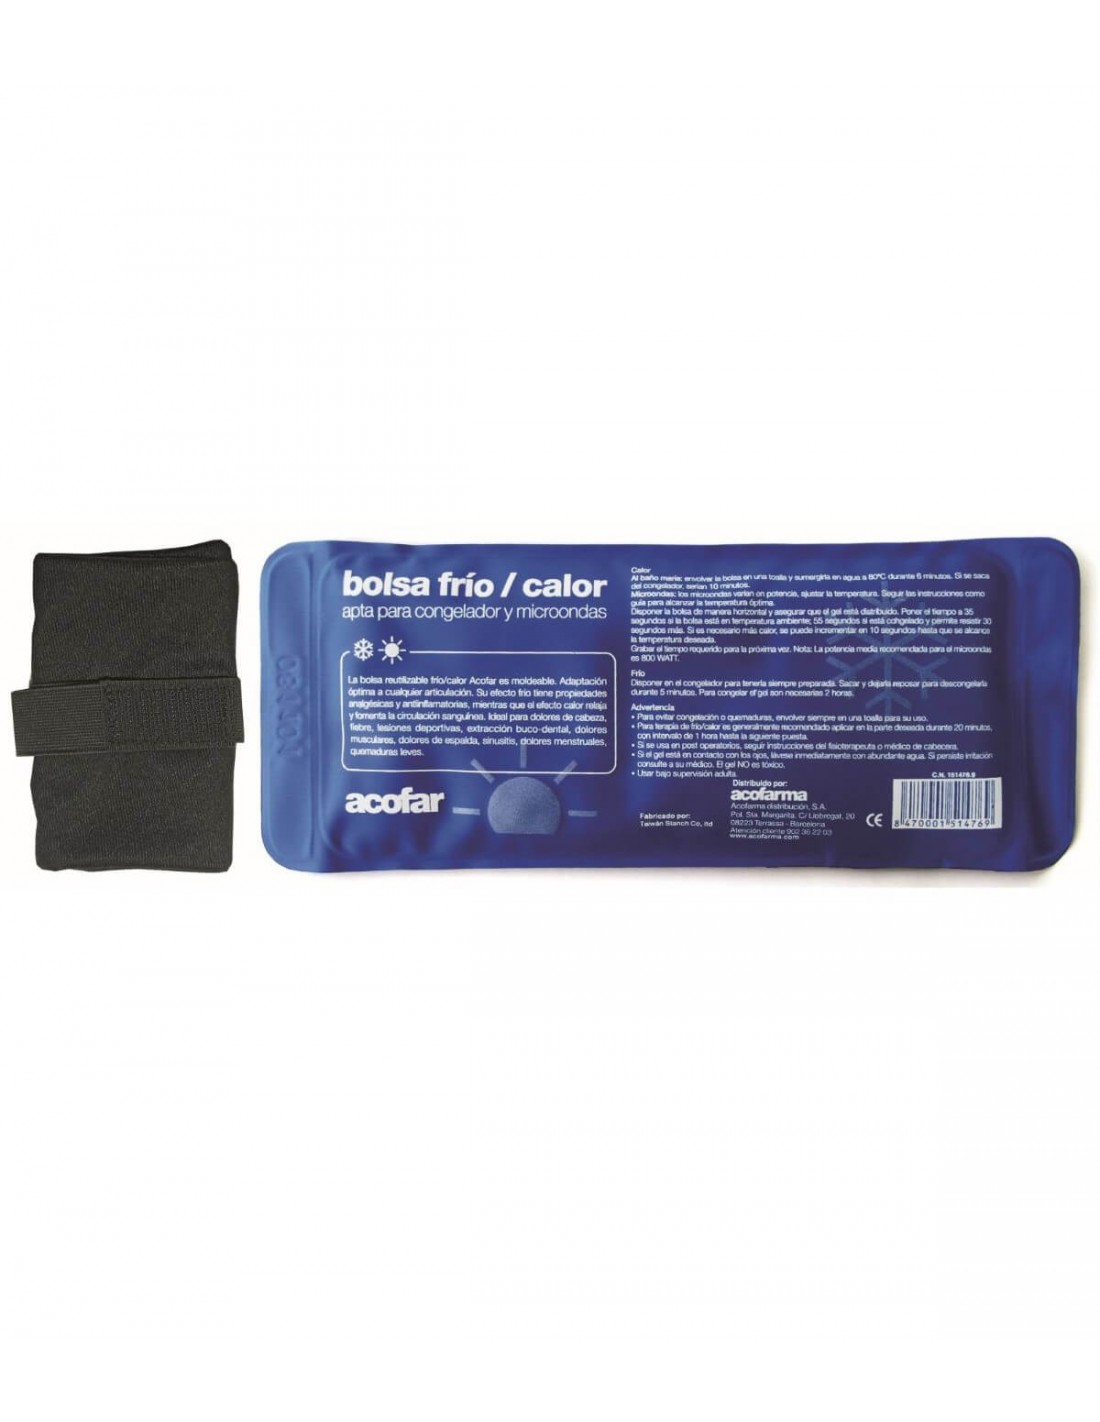 Bolsa de gel frío/calor Frical — Farmacia Don Bosco